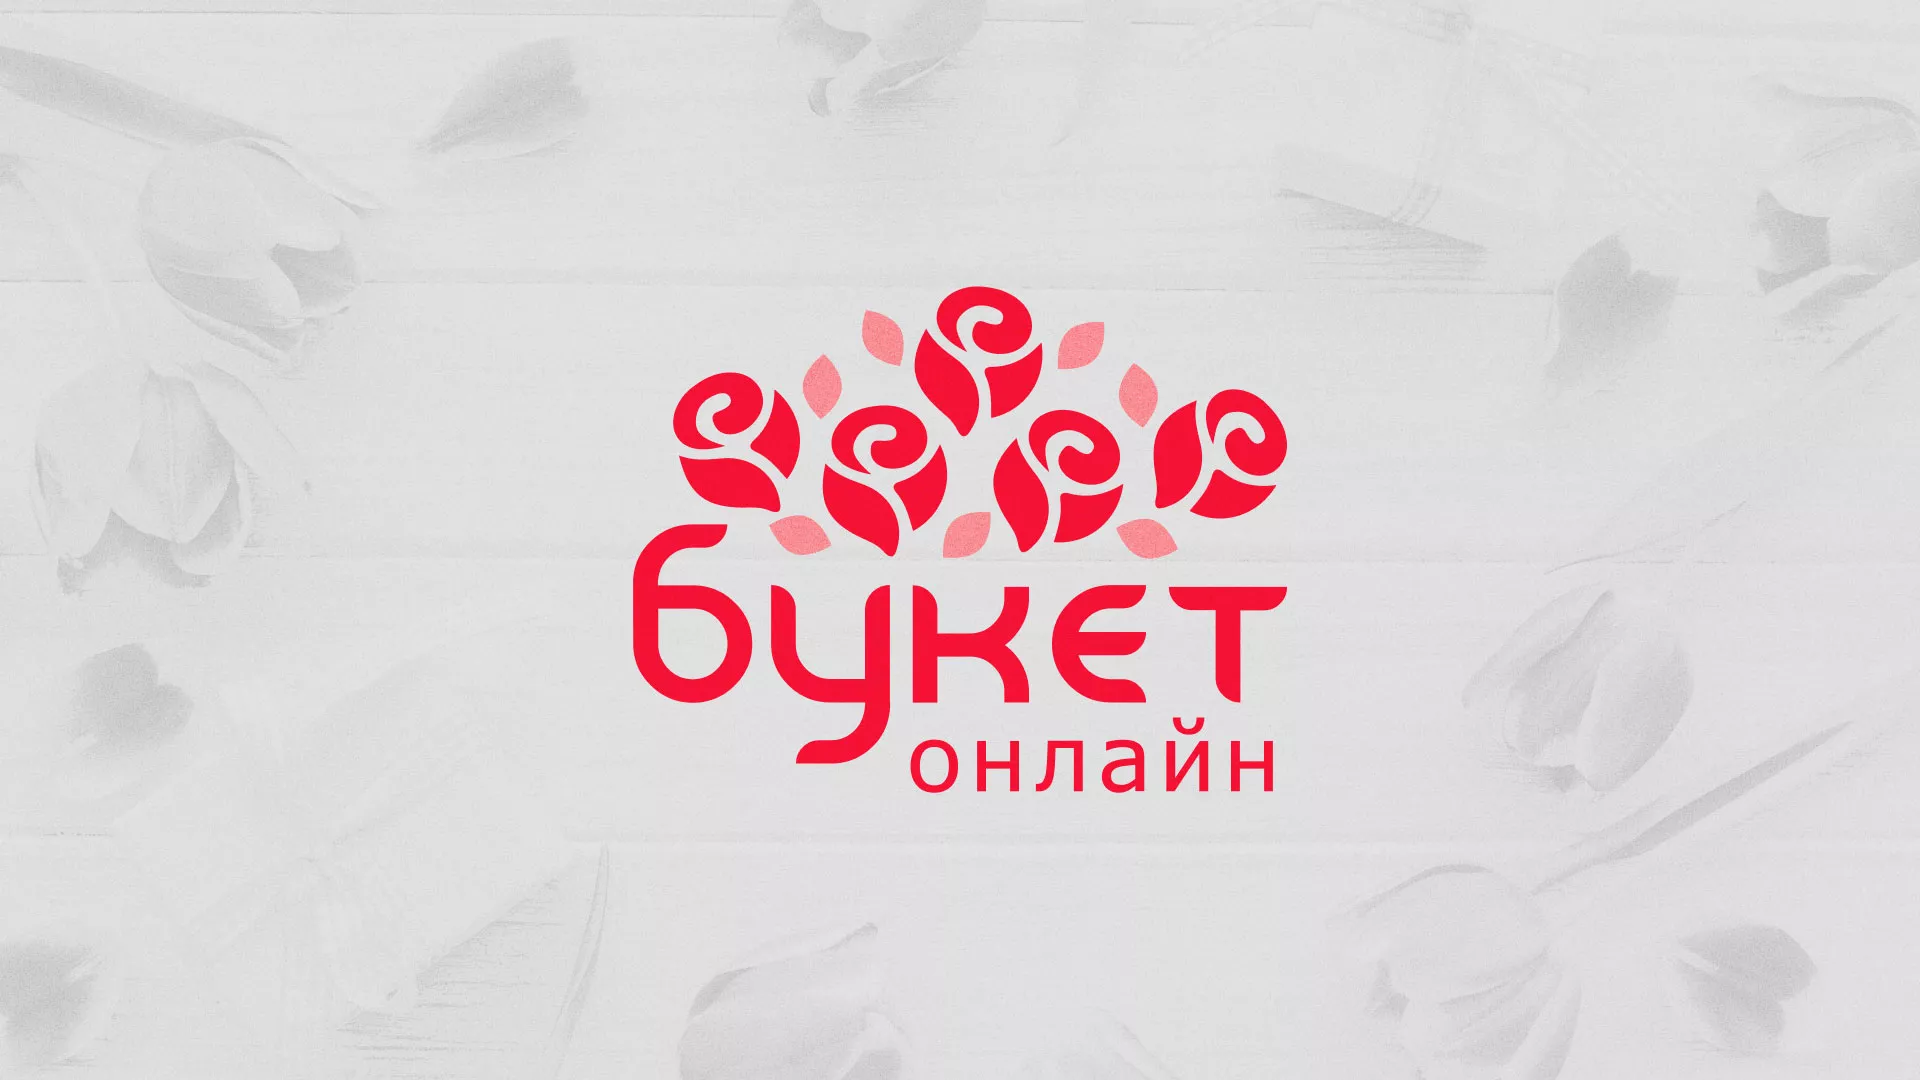 Создание интернет-магазина «Букет-онлайн» по цветам в Донецке